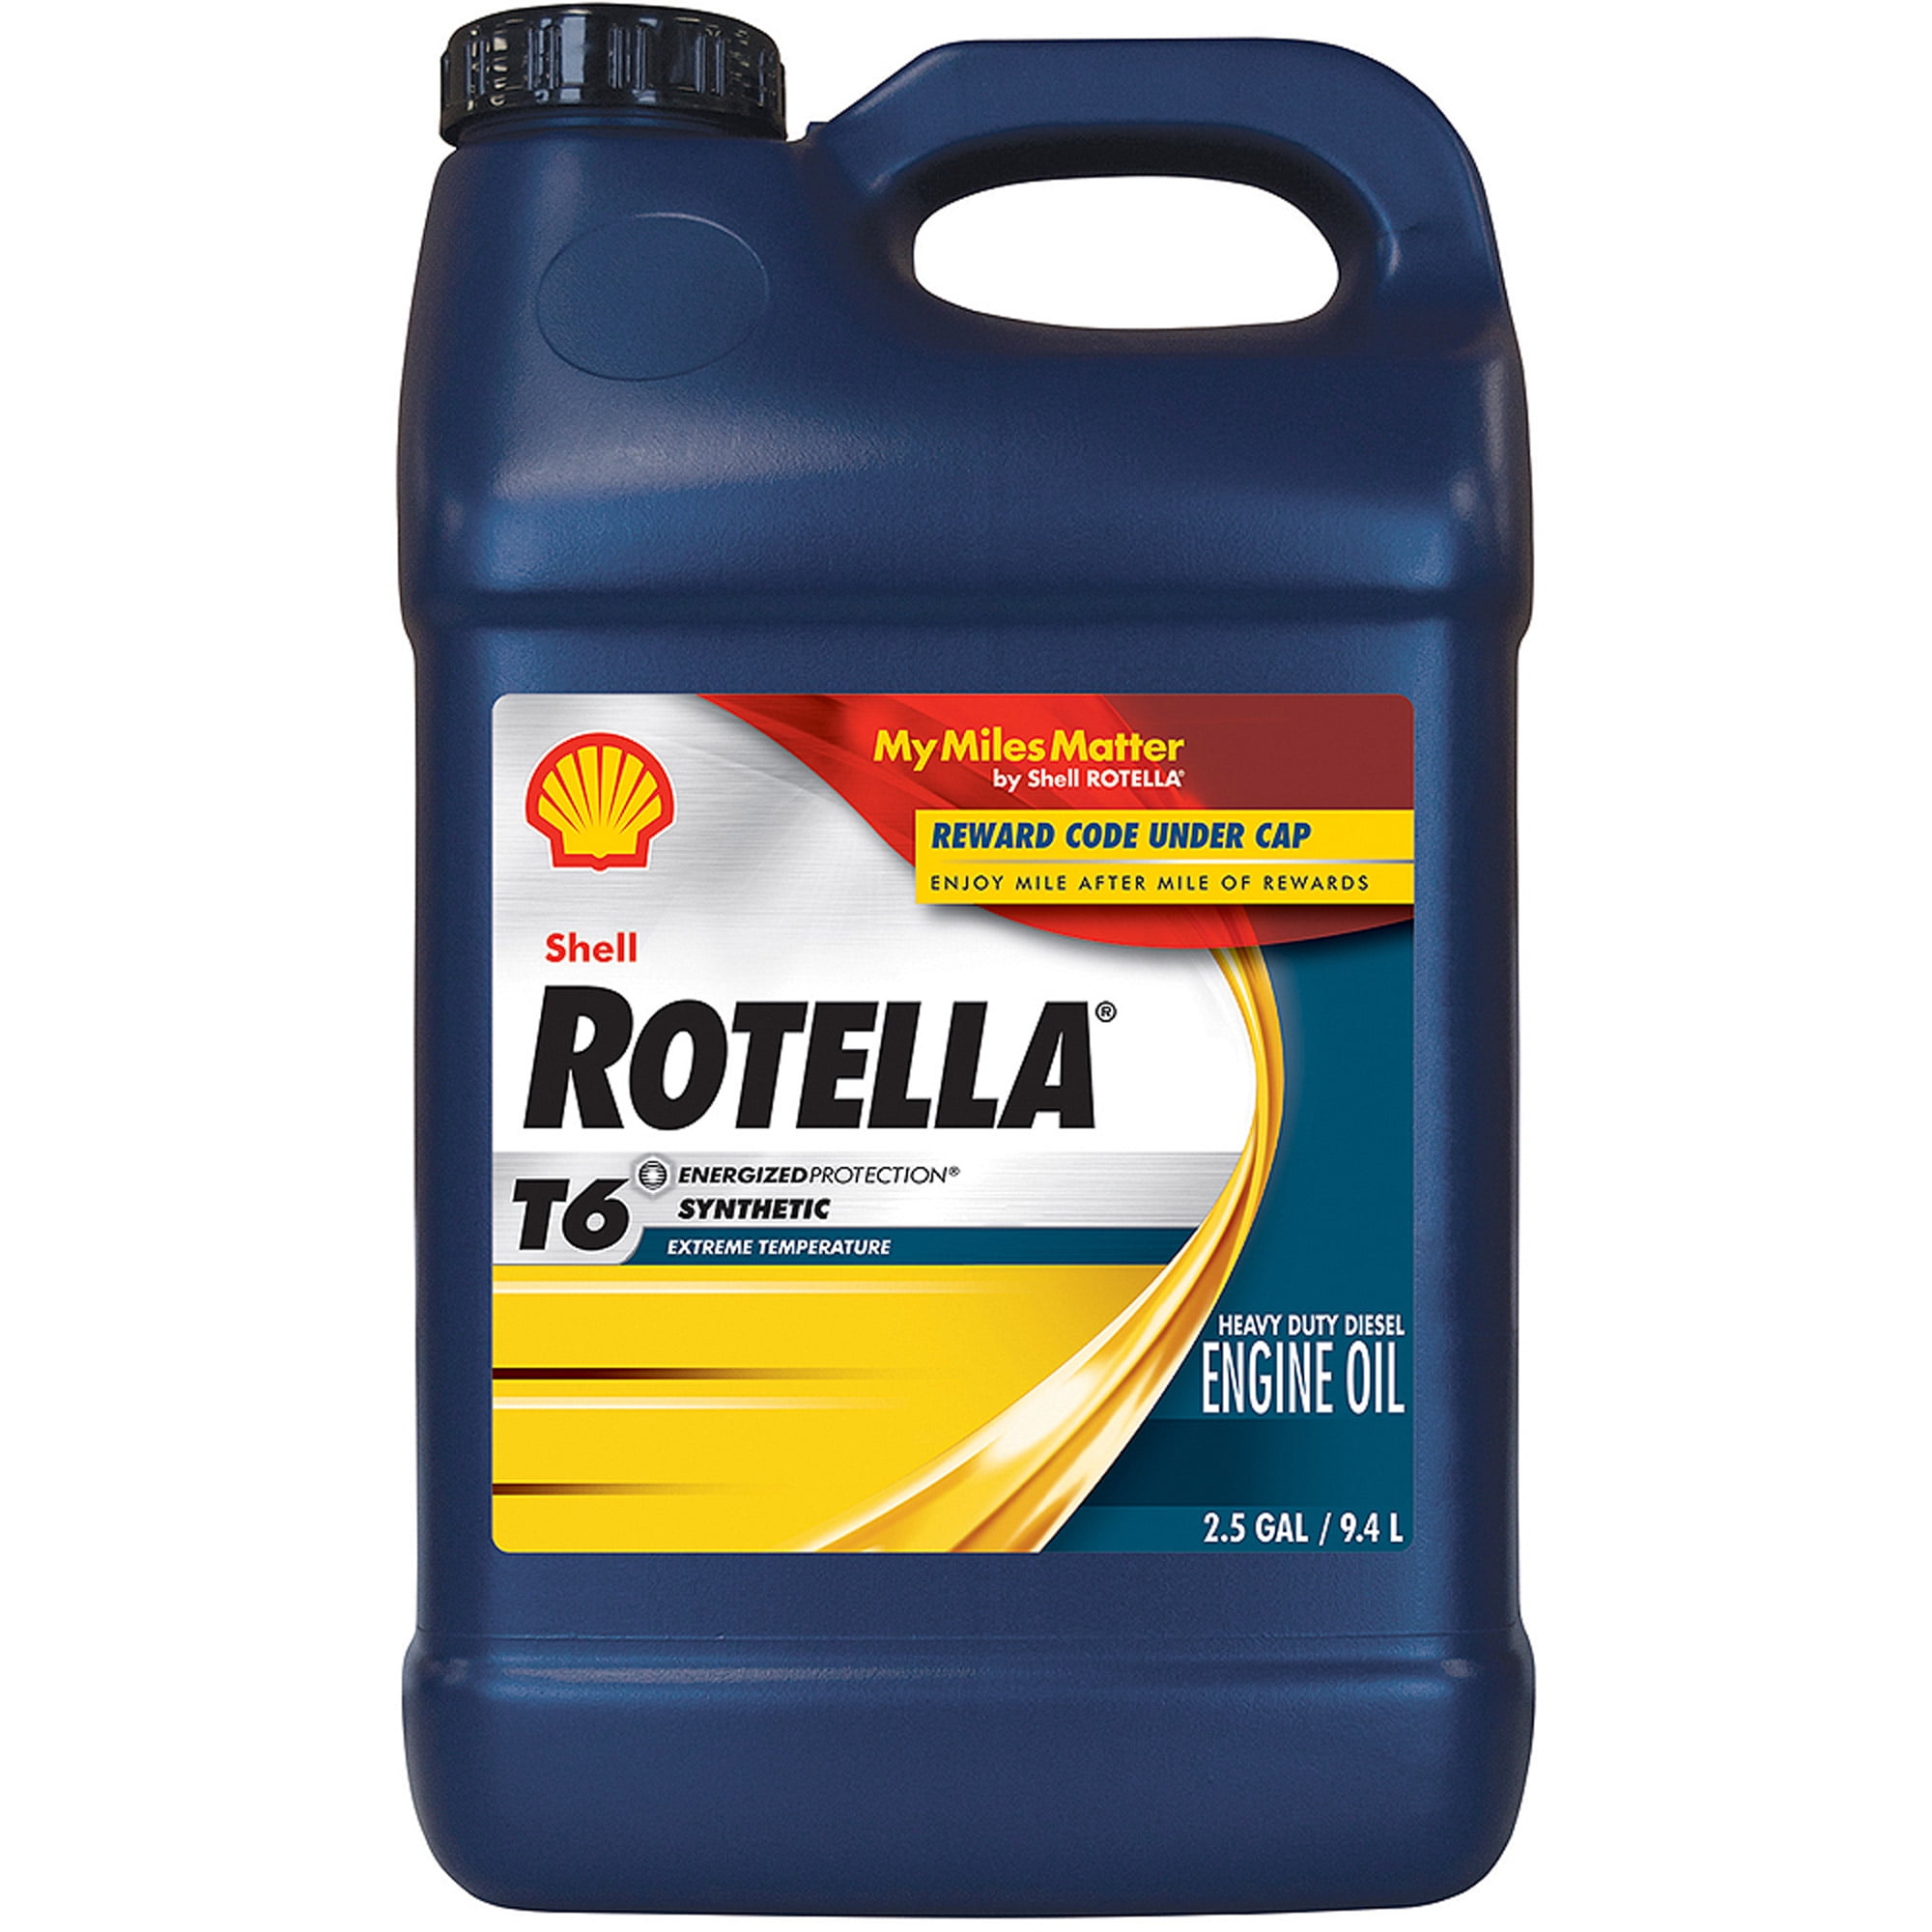 Rotella T6 5W40 Motor Oil, 2.5 gal - Walmart.com